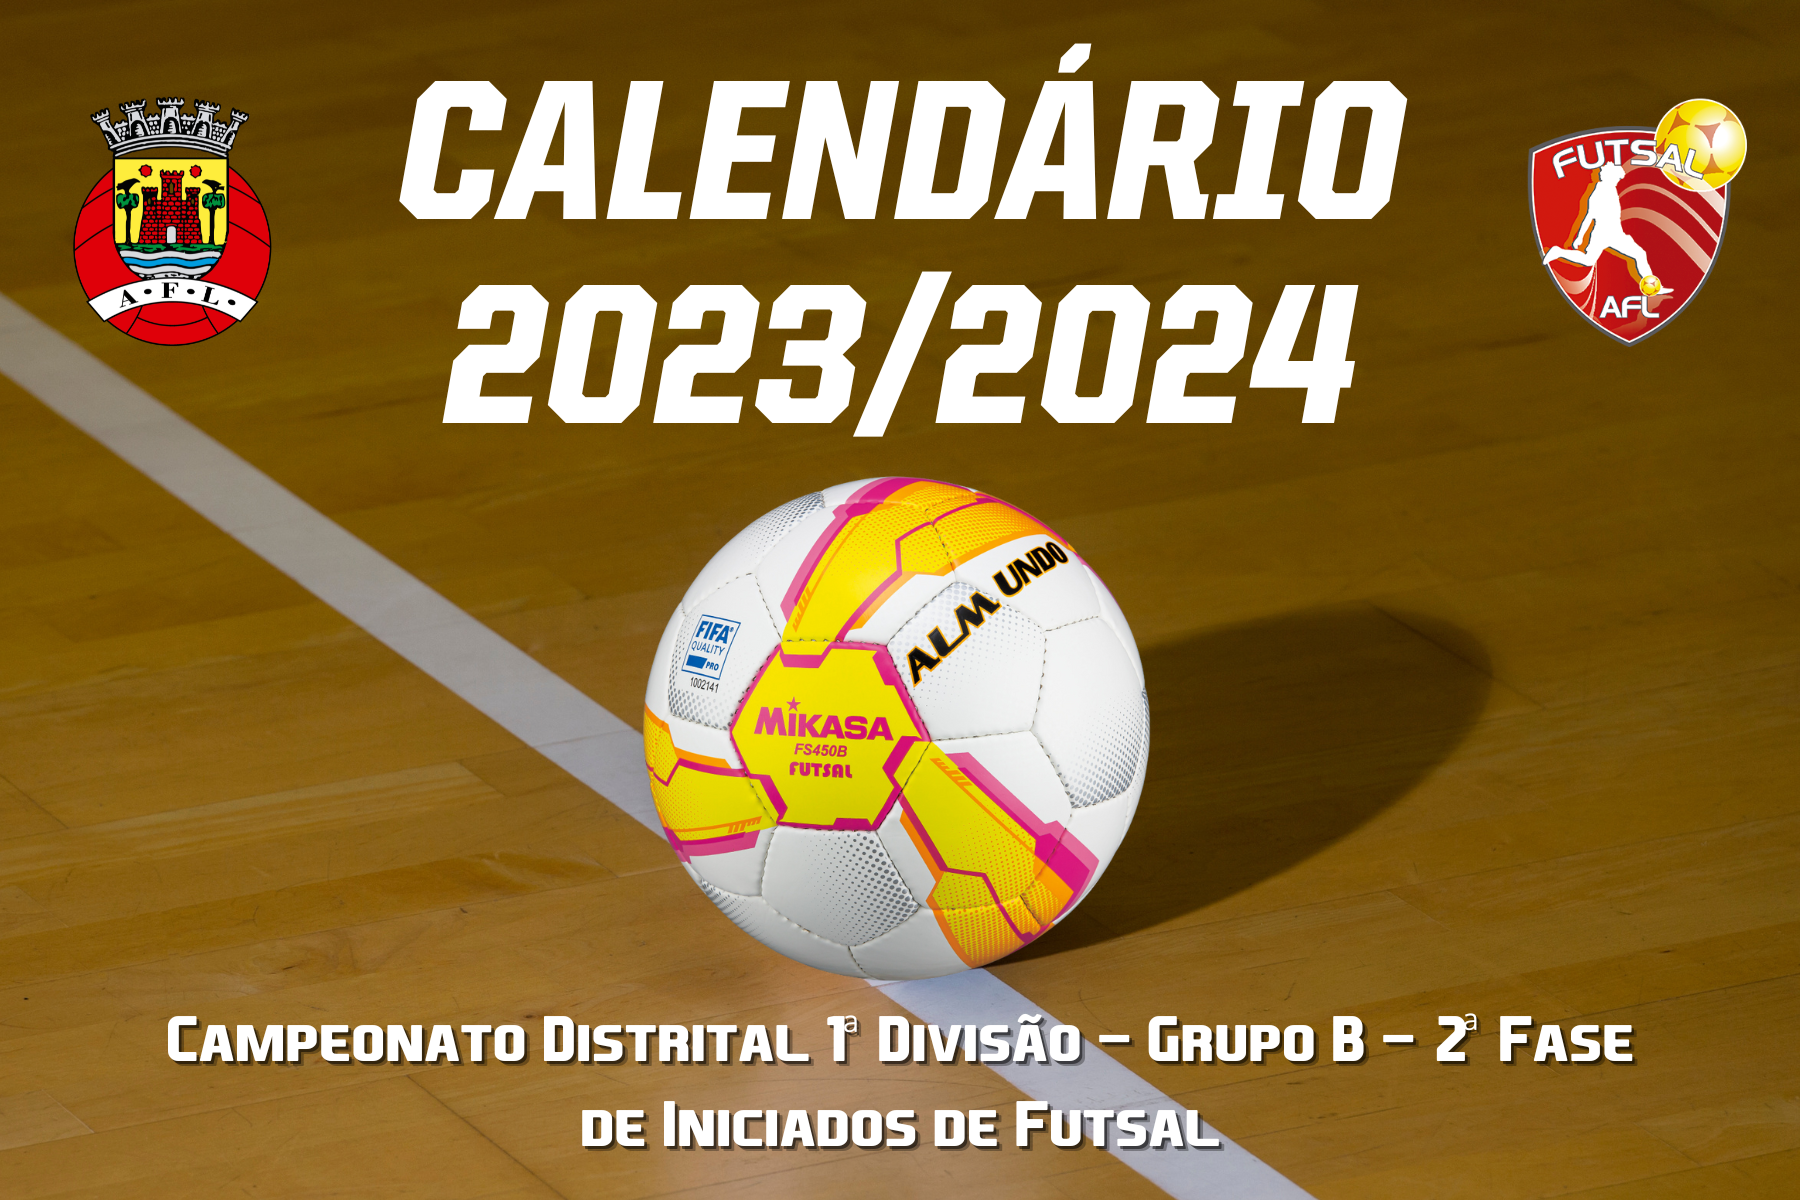 Calendário do Campeonato Distrital 1ª Divisão - Grupo B - 2ª Fase conhecido